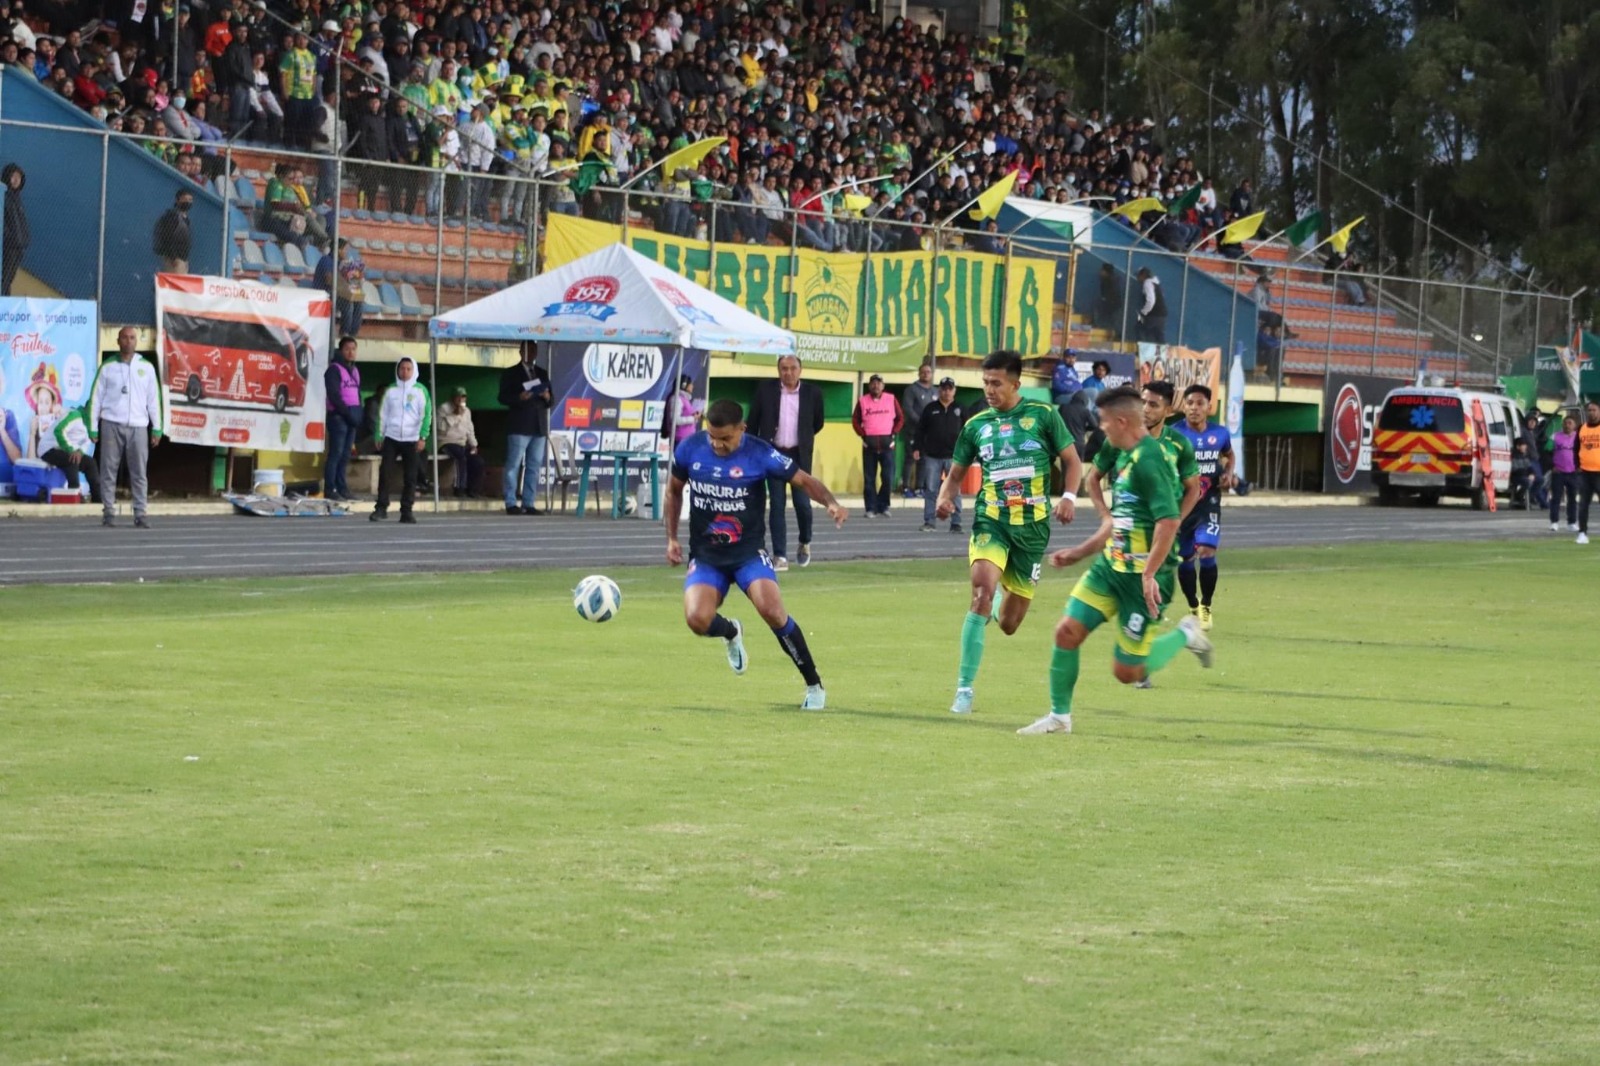 Jugadores de Xinabajul Huehue se presentaron al partido de la jornada 4 frente a Iztapa exigiendo el pago de su sueldo. Foto Prensa Libre (Deportivo Iztapa)